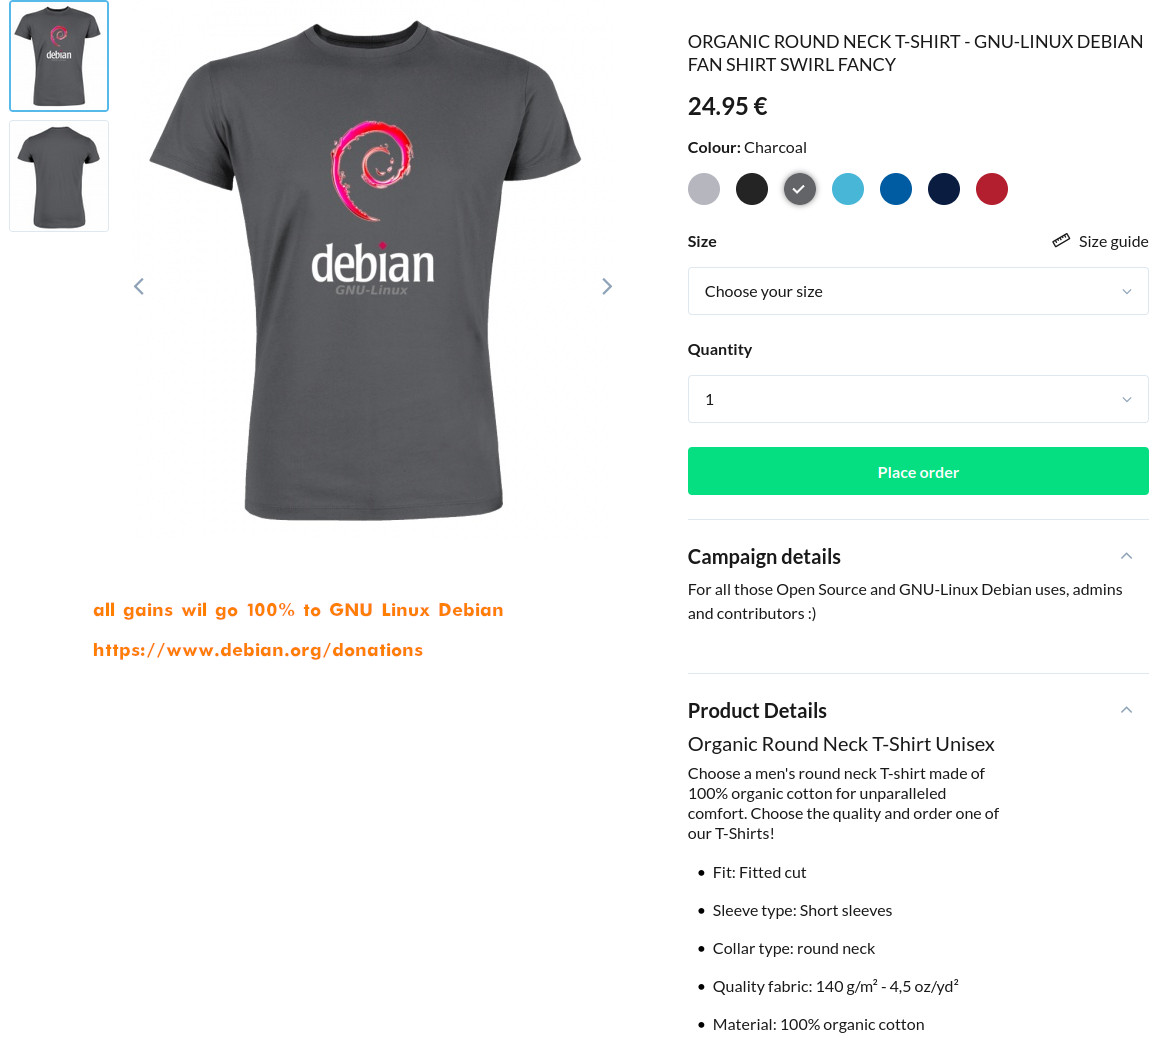 https://www.teezily.com/gnu-linux-debian-fan-shirt-swirl-fancy